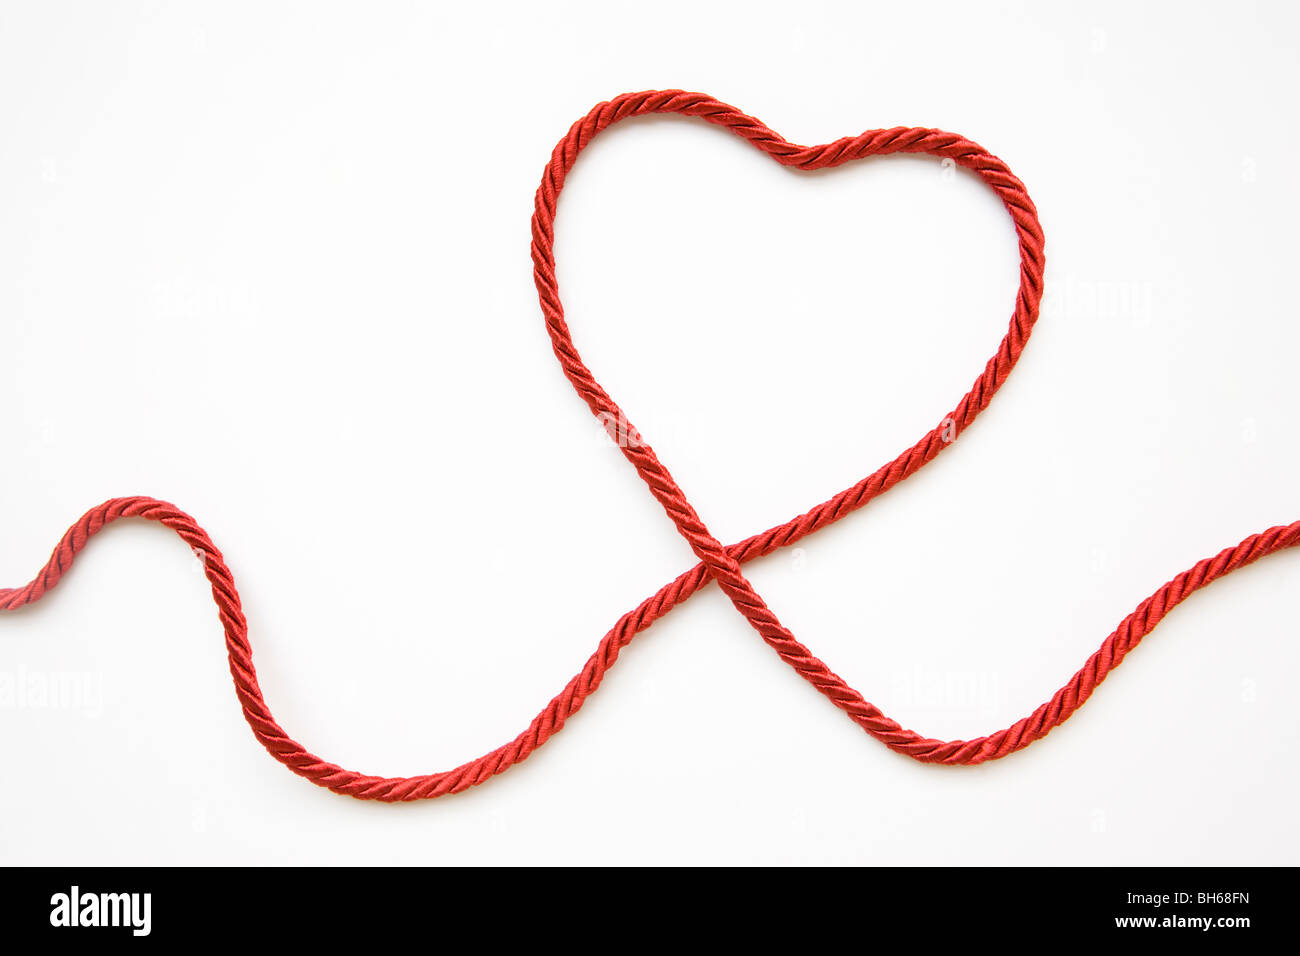 Con forma de corazón hecho de cuerda roja Foto de stock